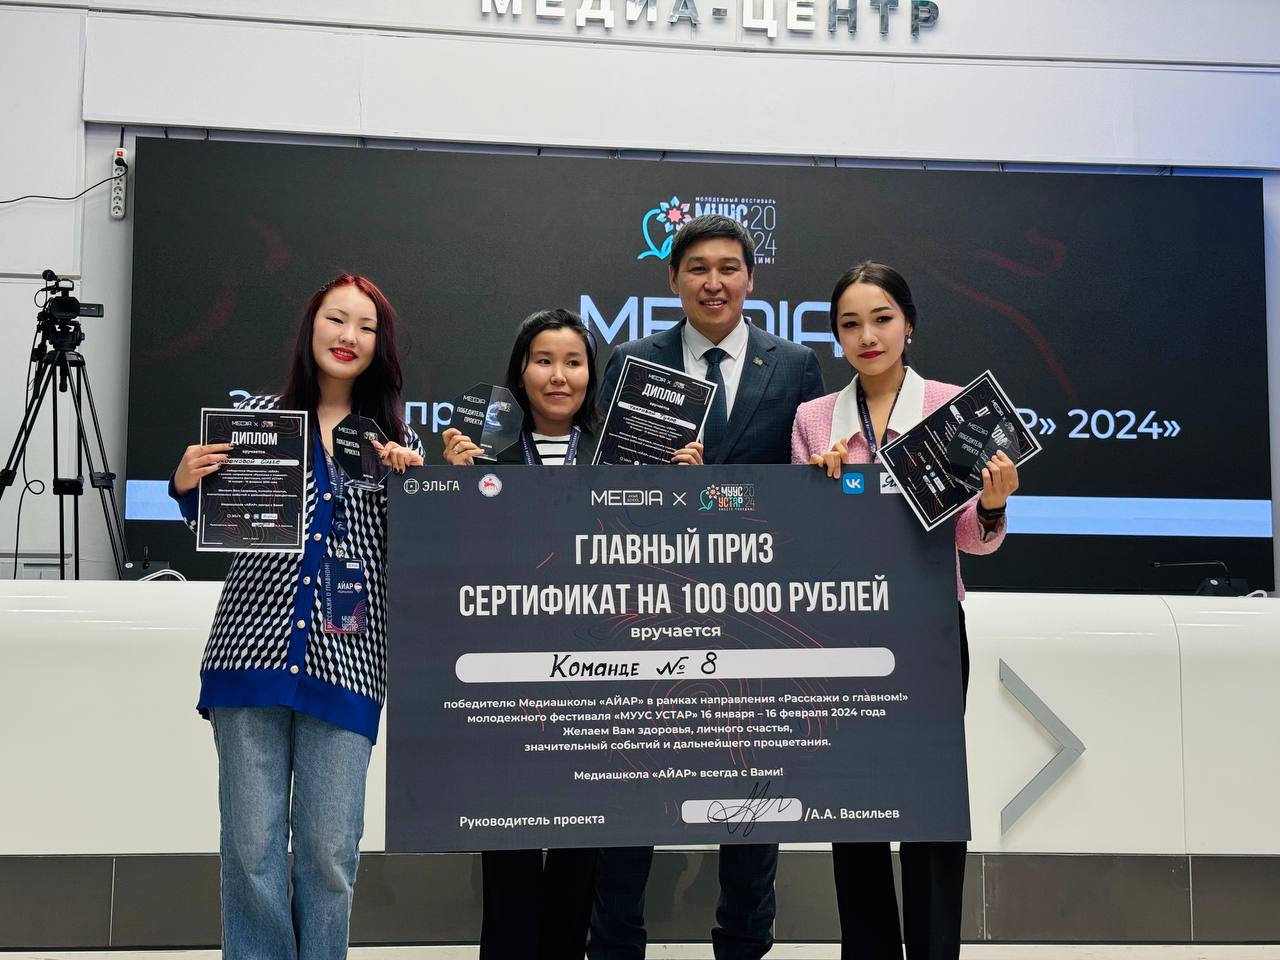 В Якутии определили победителей медиашколы «АЙАР» в рамках фестиваля «Муус устар»